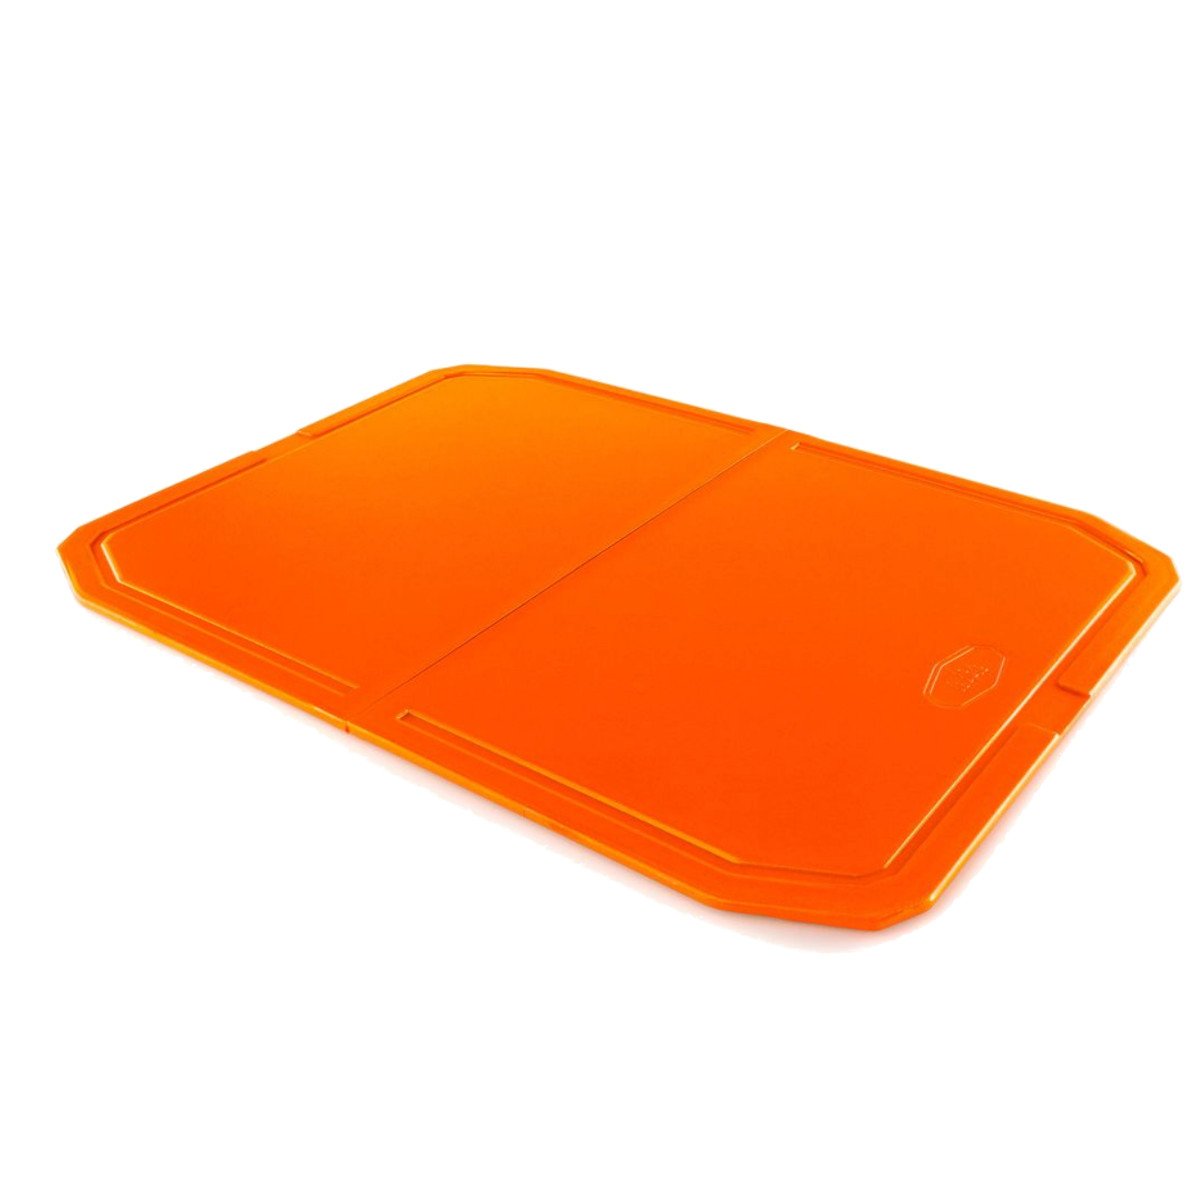 GSI Folding Cutting Board in Orange